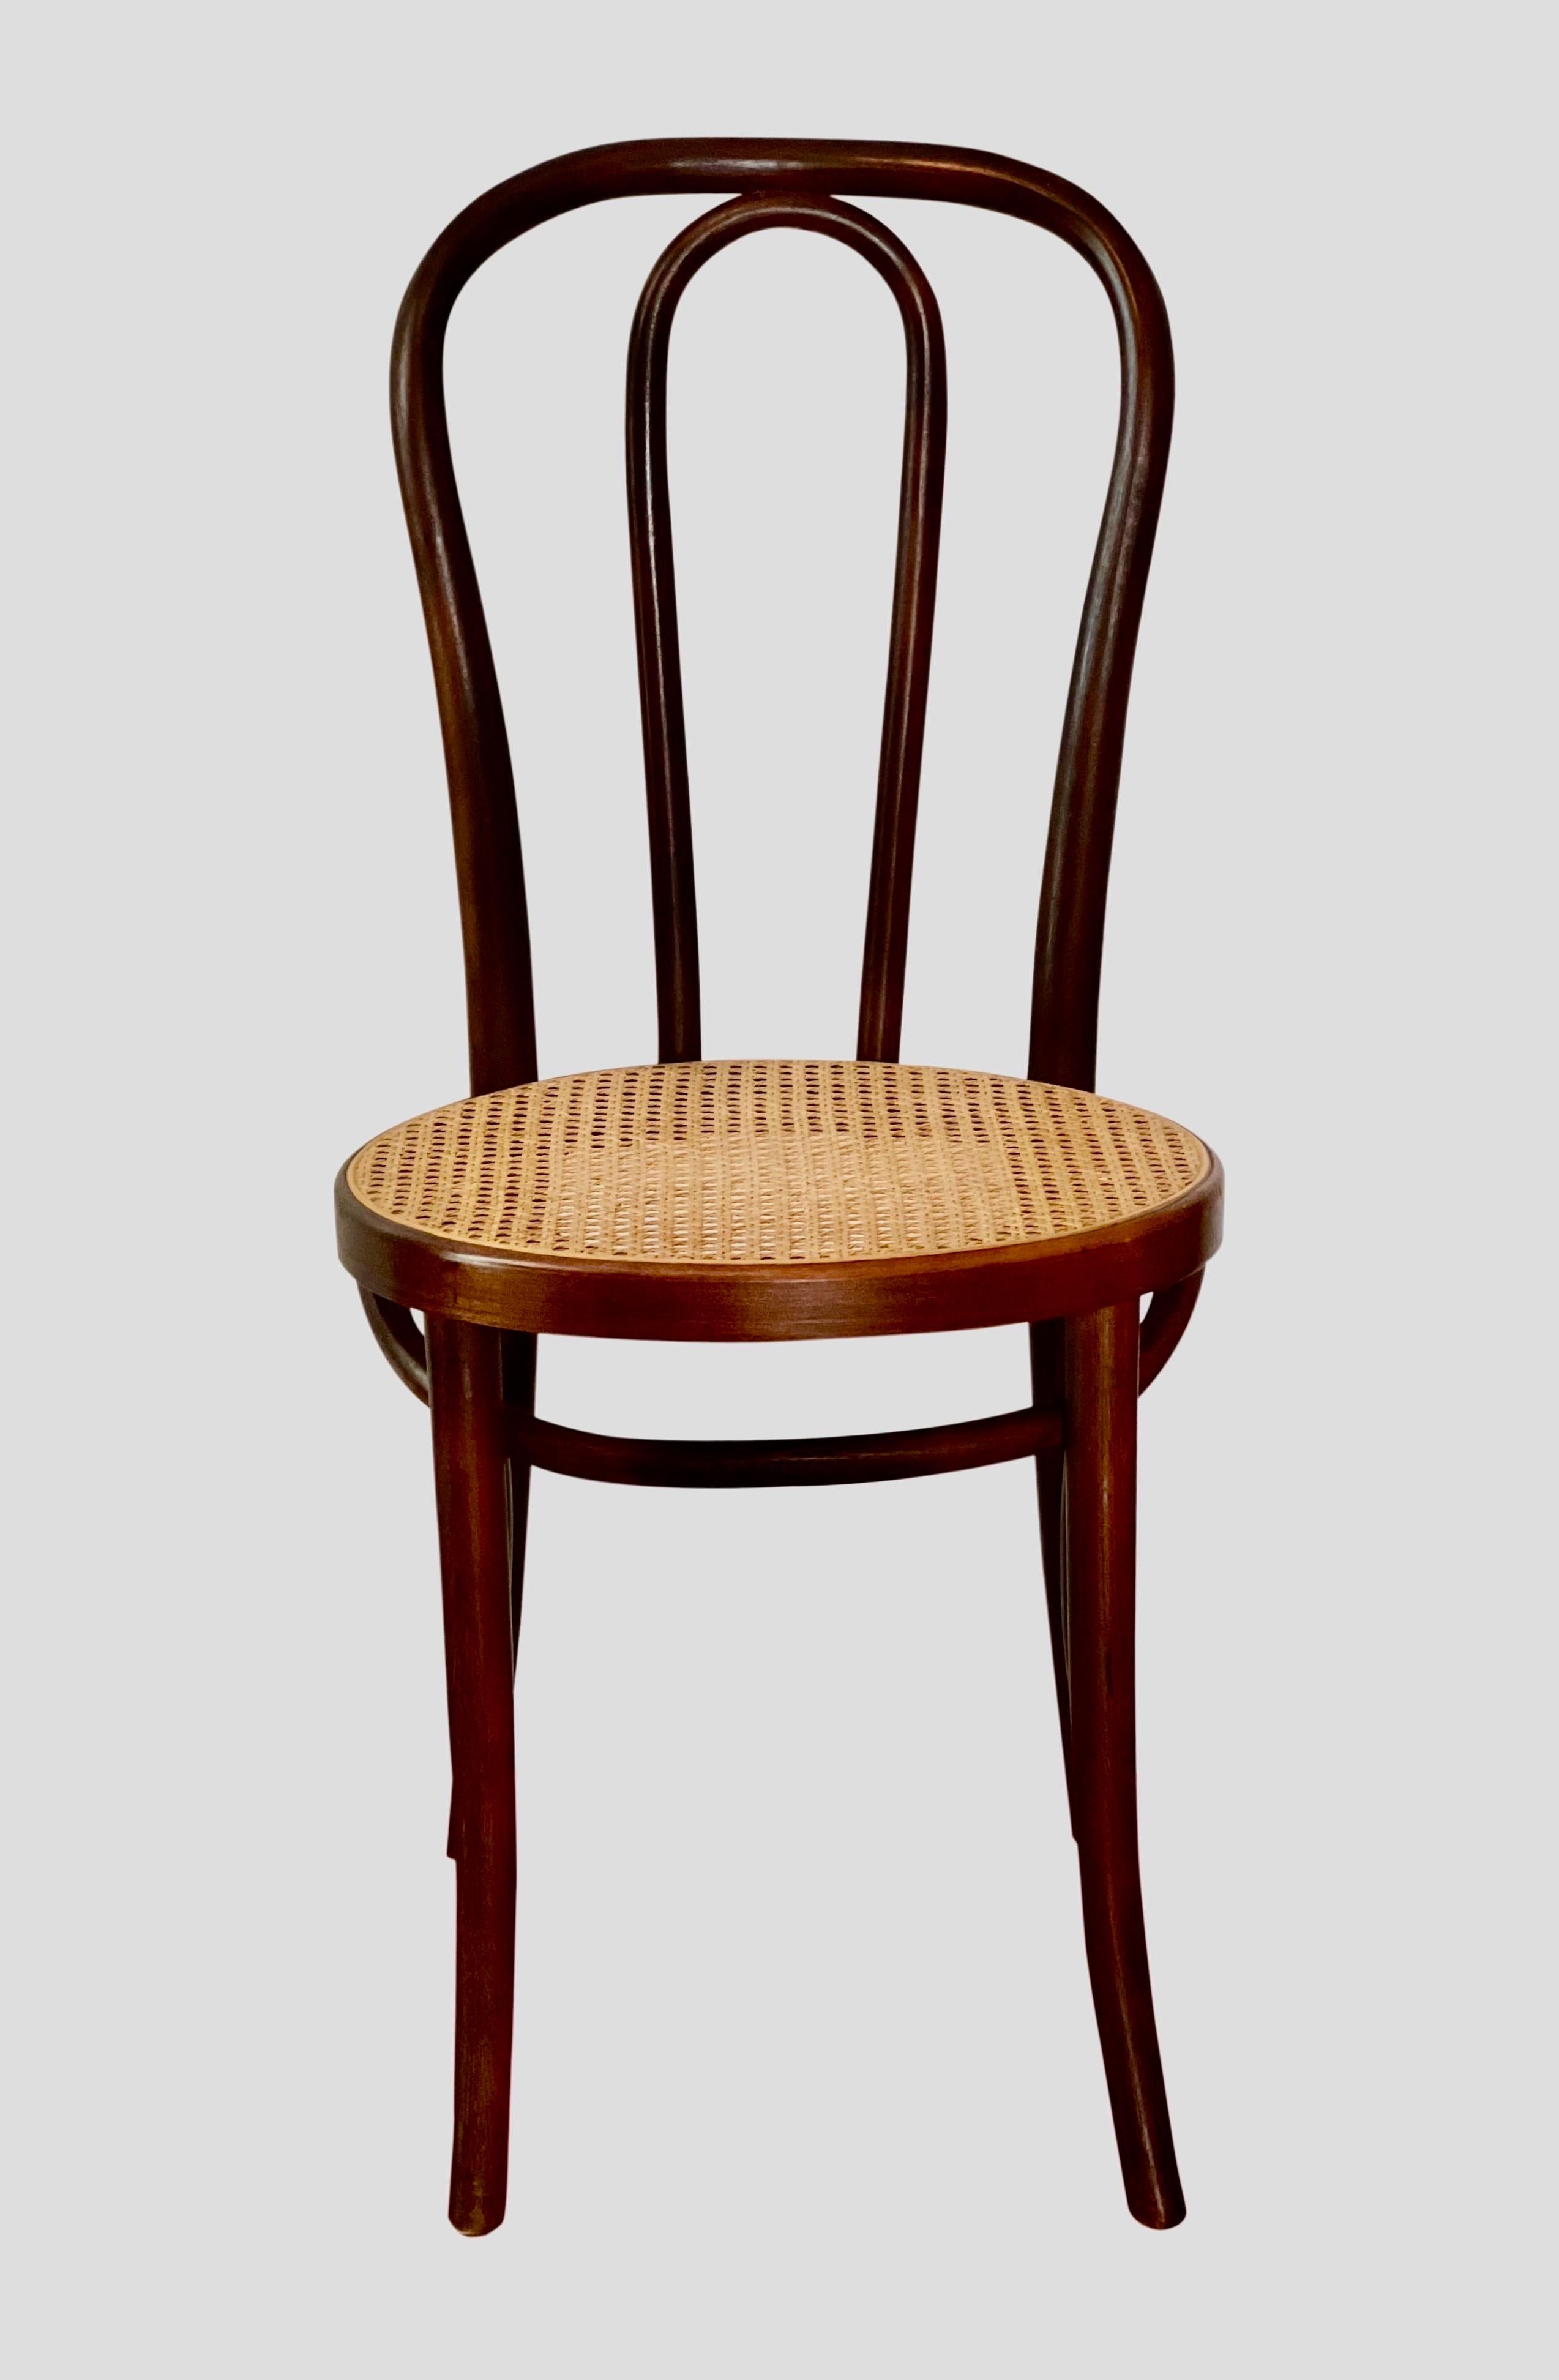 Chaise de café ou d'appoint en bois courbé Thonet, années 1920

Cette chaise au design emblématique est dotée d'une structure en bois de hêtre à la fois robuste et légère. Un classique original qui convient à de nombreux contextes. Il est estampillé